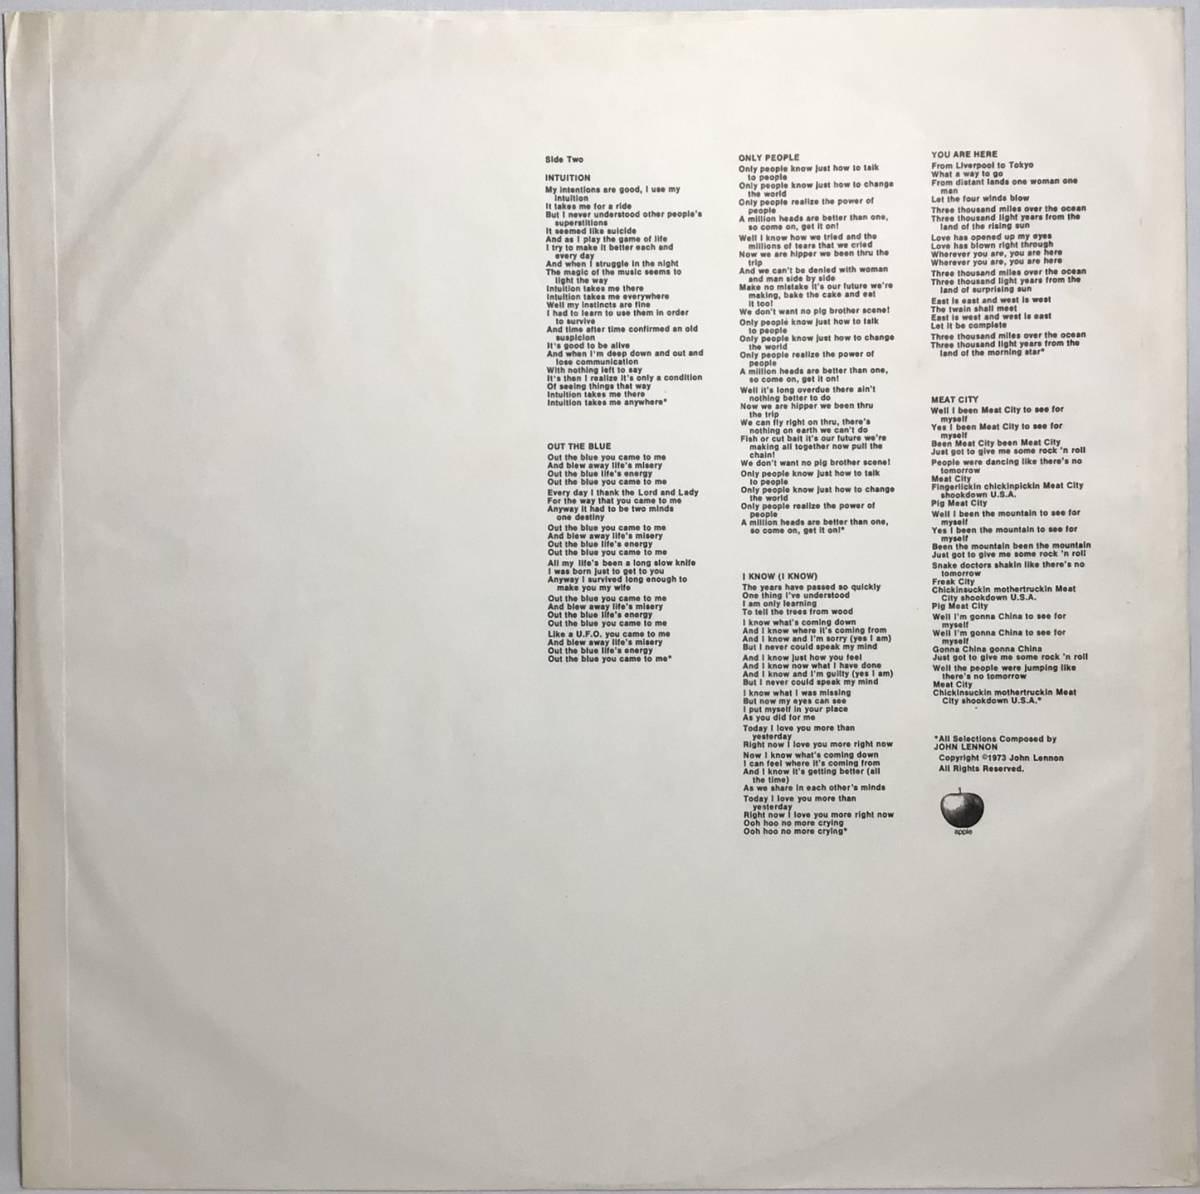 【日LP帯】 ジョンレノン JOHN LENNON ヌートピア宣言 MIND GAMES 1973 国内版 APPLE LPレコード EAP-80950 THE BEATLES ビートルズ 試聴済_画像7